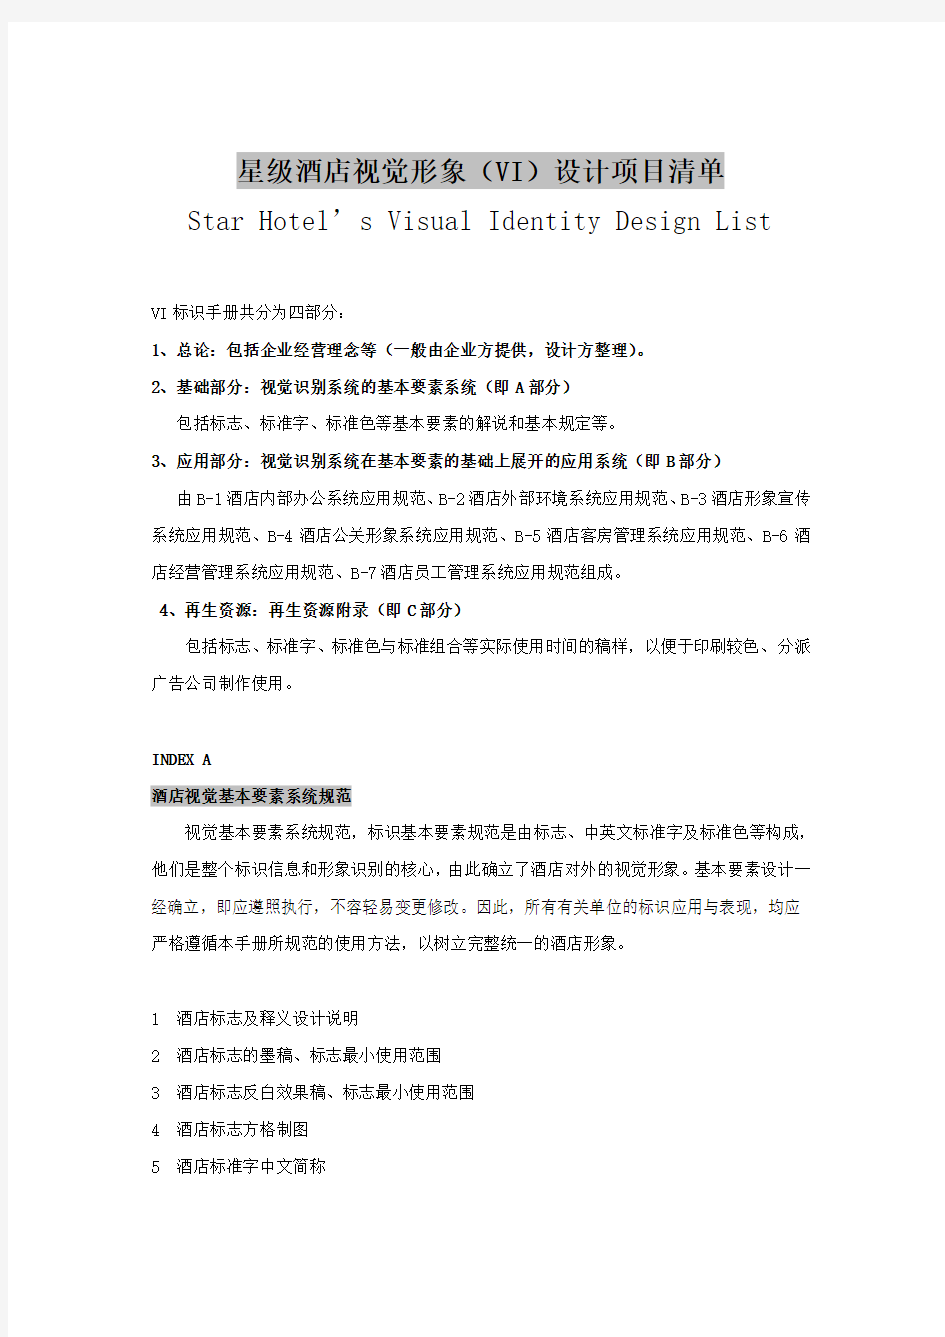 星级酒店视觉形象(VI)设计项目清单